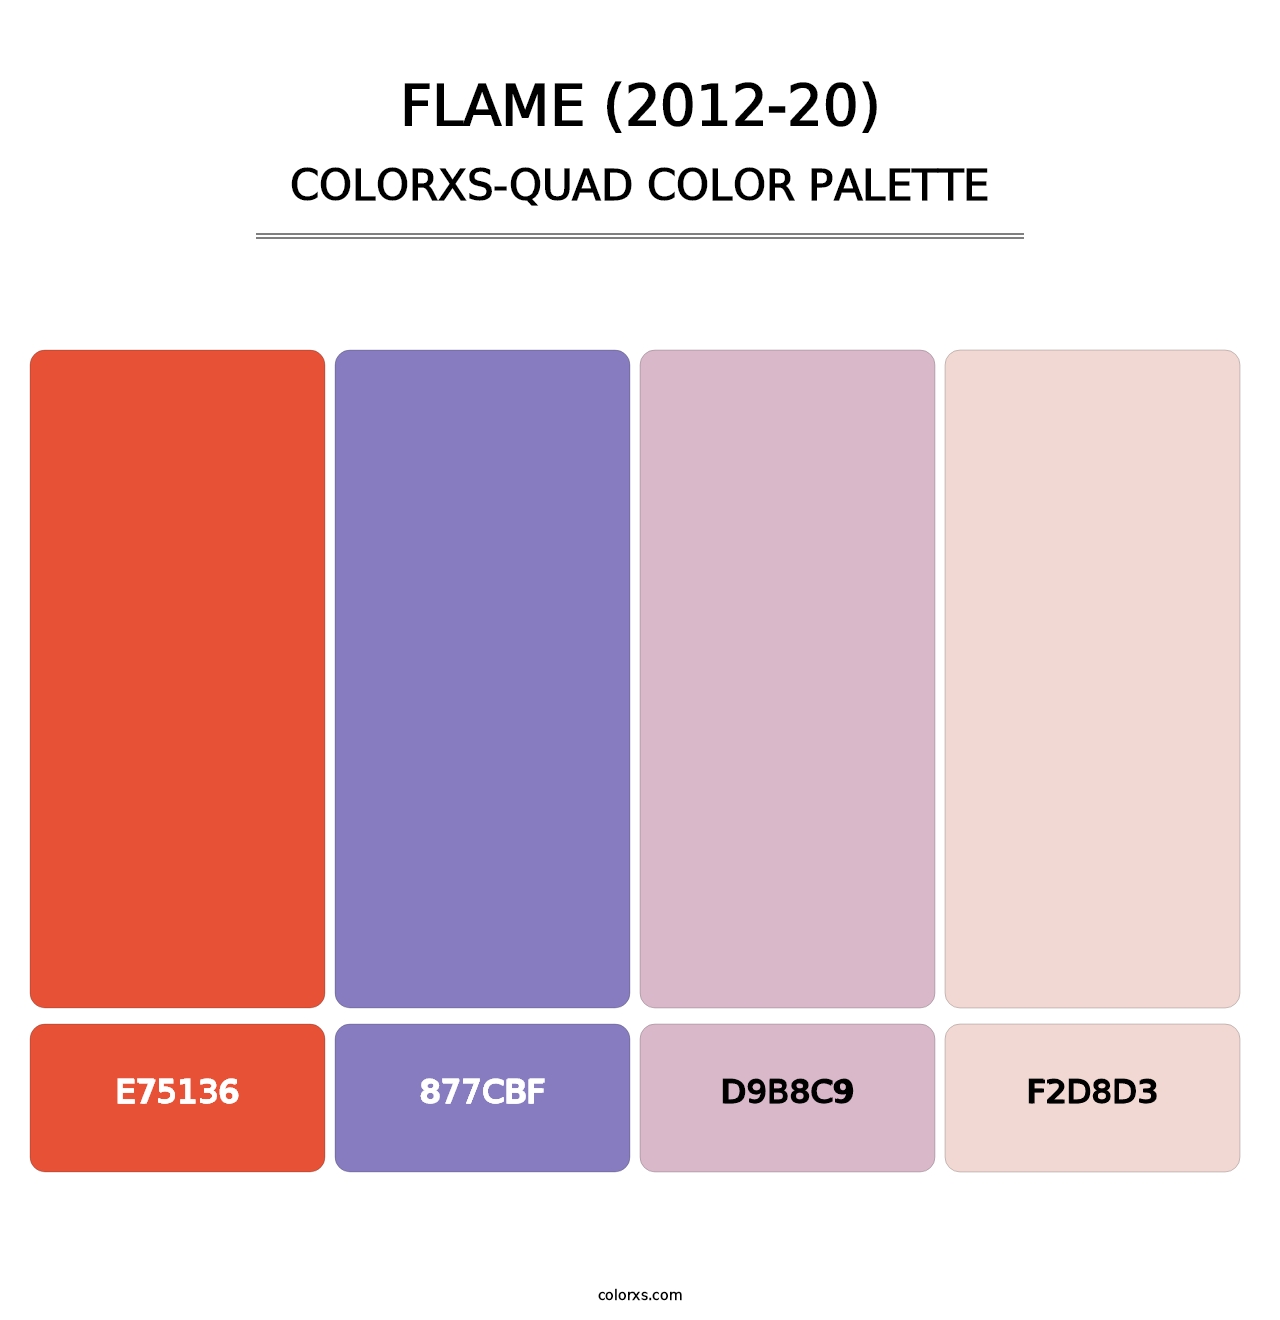 Flame (2012-20) - Colorxs Quad Palette